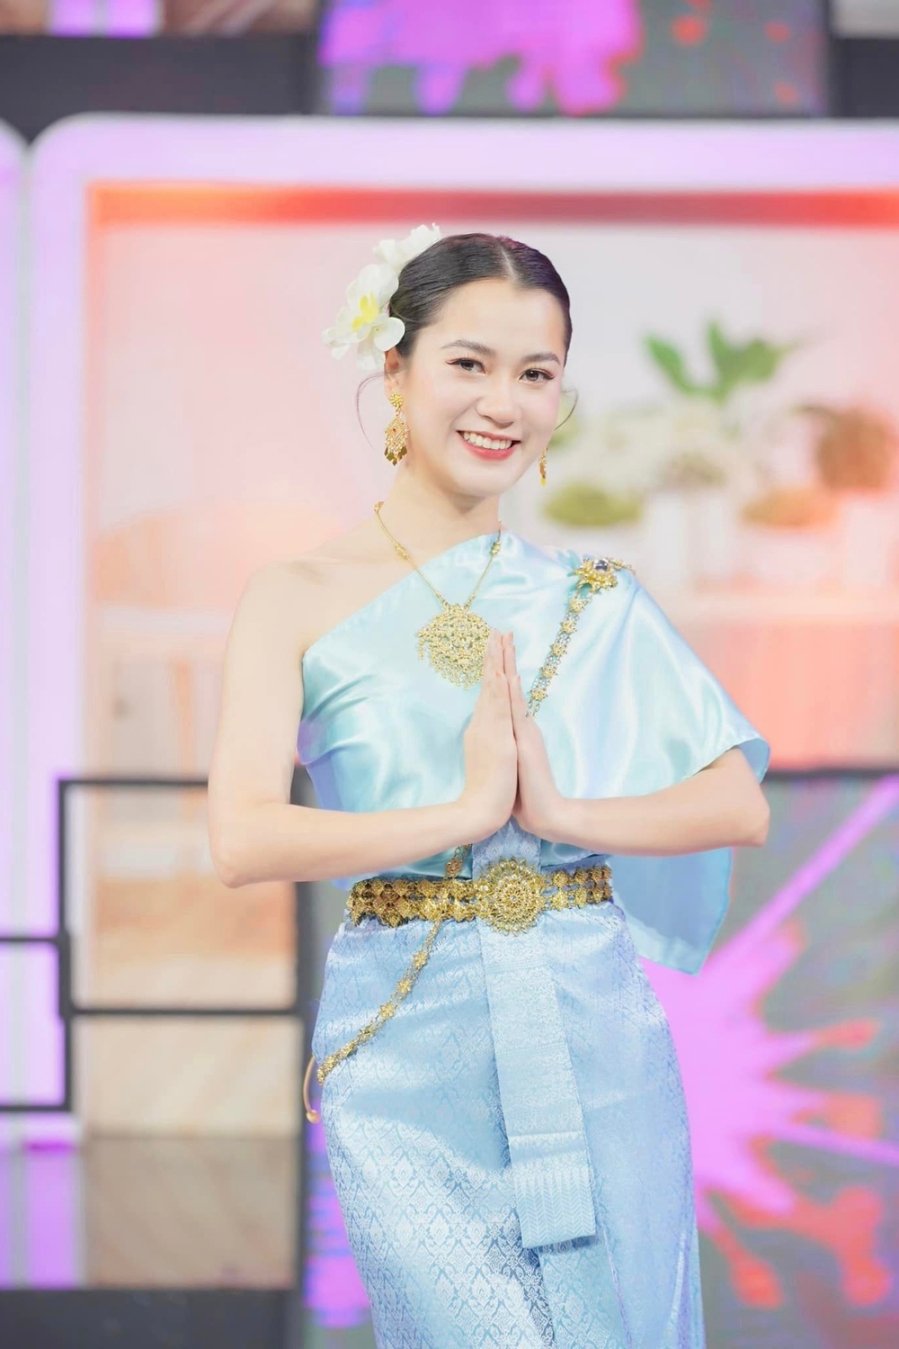 Lâm Vỹ Dạ lên đồ với trang phục truyền thống xứ sở Chùa Vàng, xinh yêu chằng kém gì gái Thái xịn